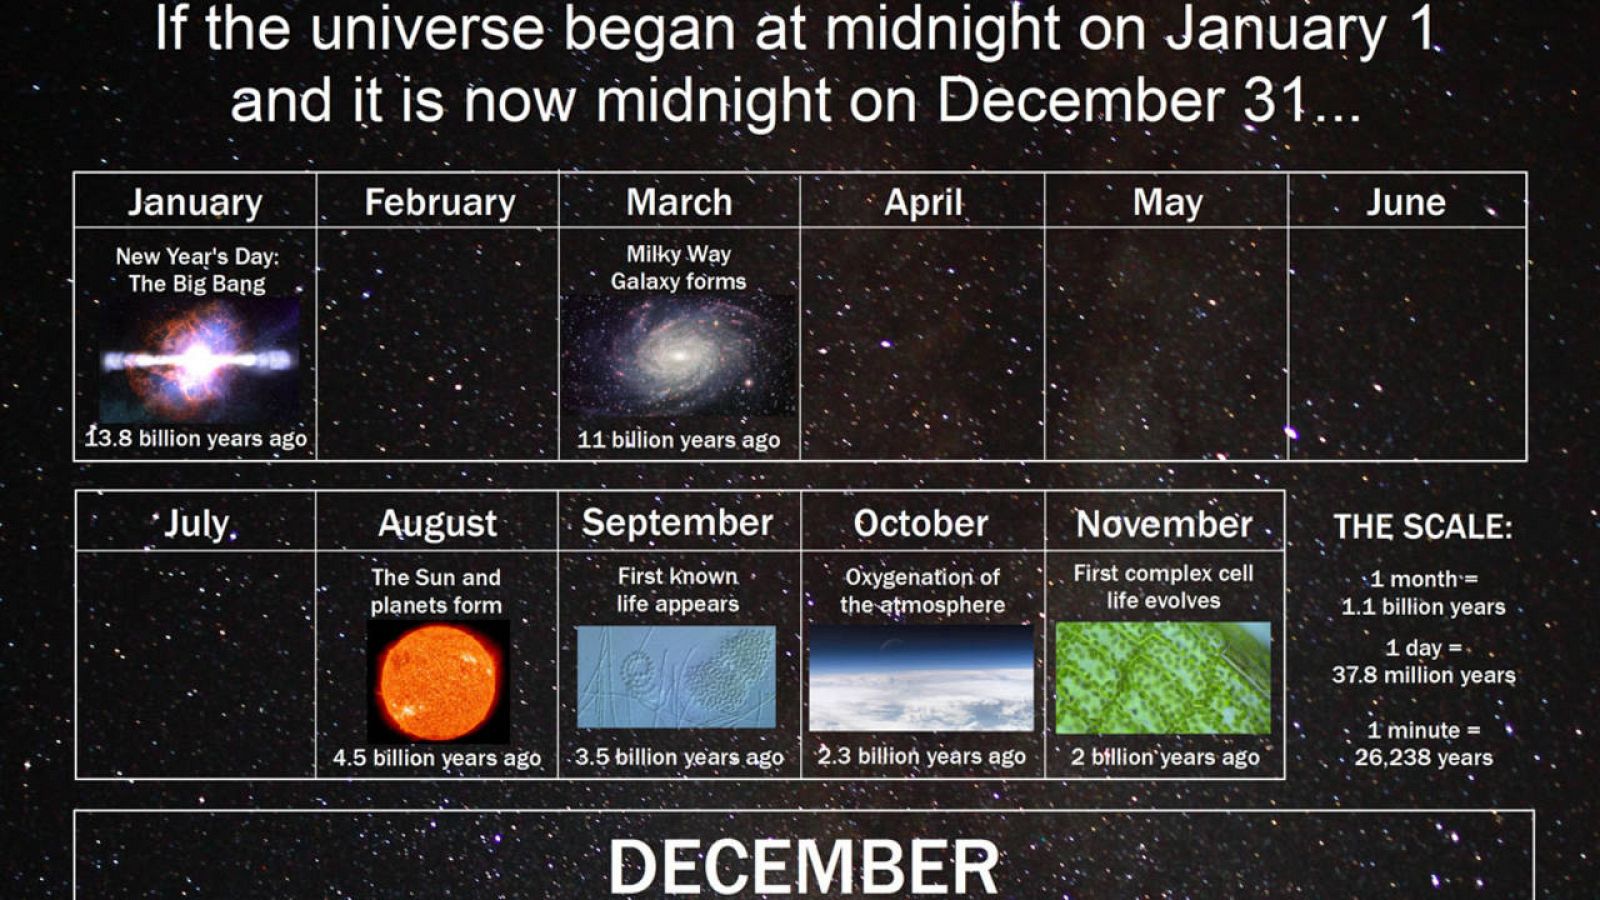 Que Es El Universo Linea De Tiempo Del Universo Calendario Cosmico Images